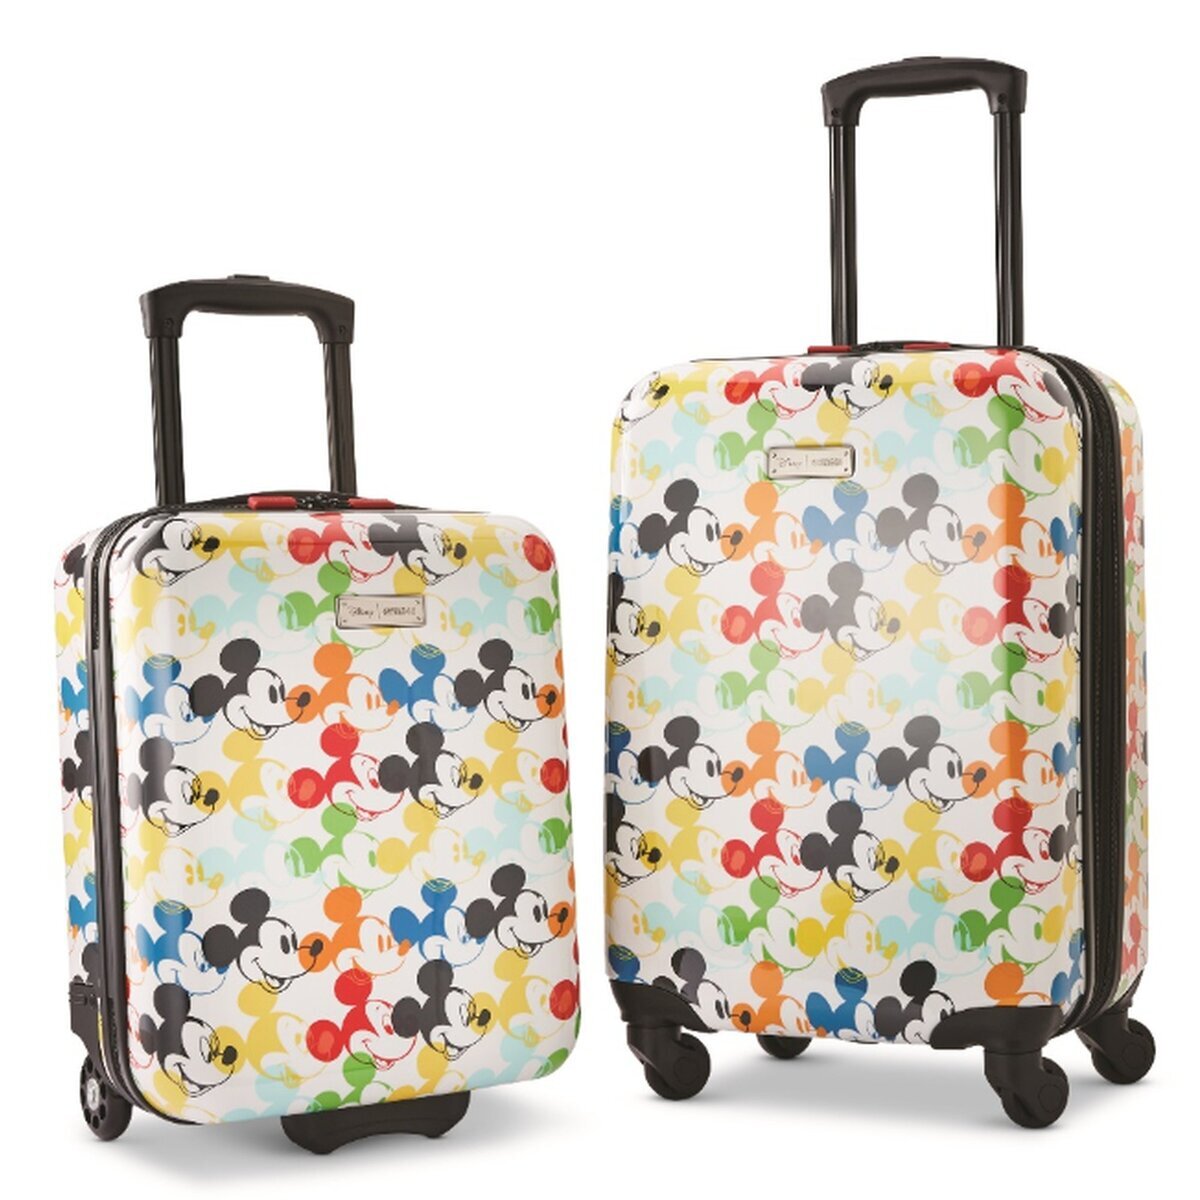 アメリカンツーリスター ディズニー スーツケース 2個セット | Costco Japan